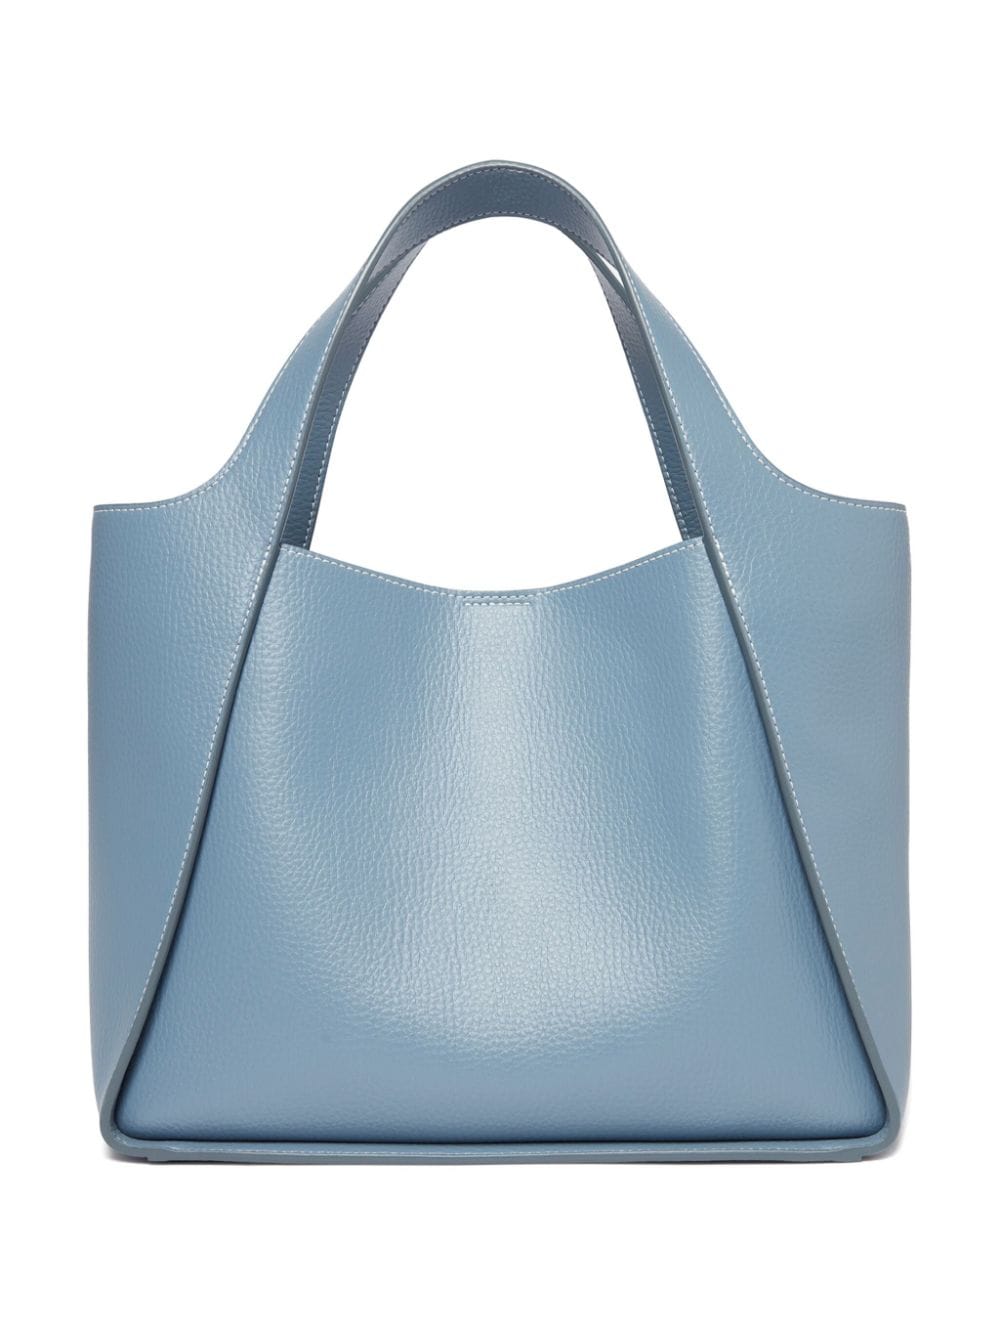 天空藍色品牌雕花手提包 - 多功能豪華款式